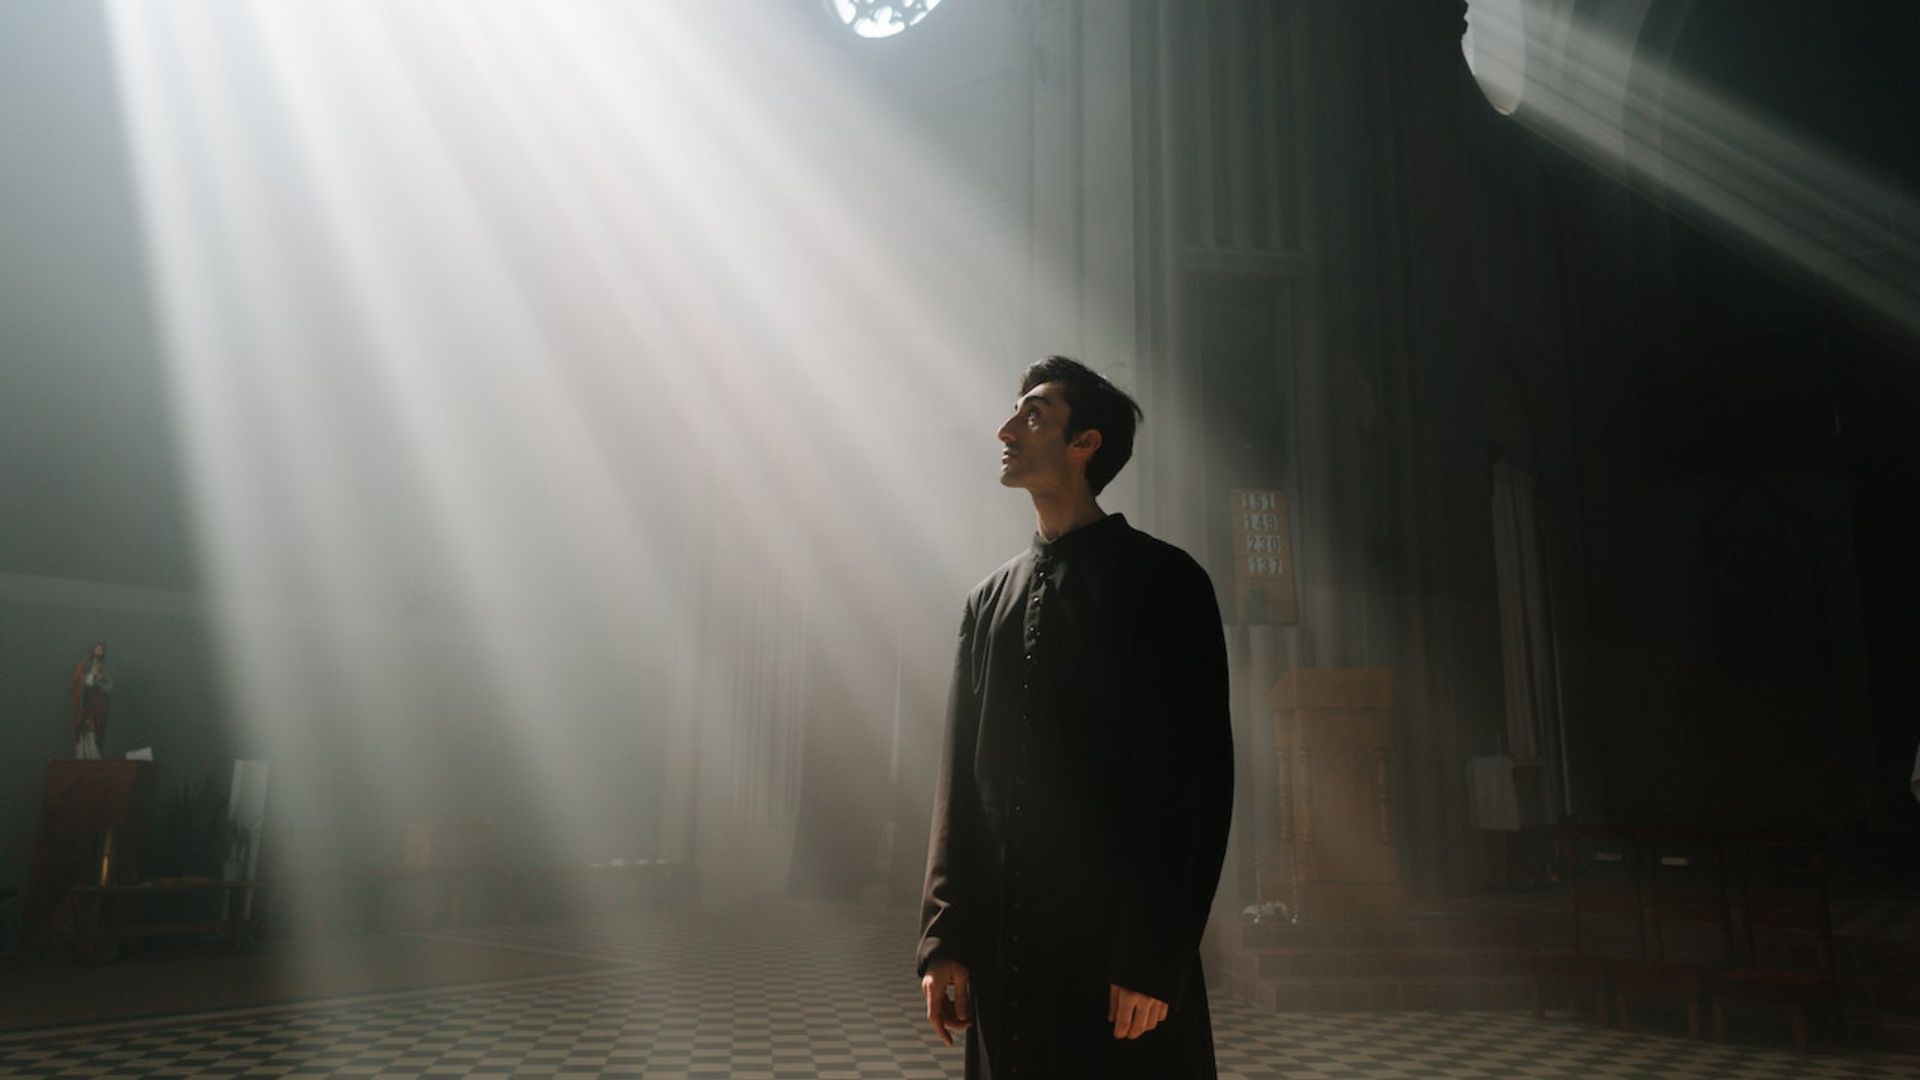 Imagem de um homem dentro de uma igreja olhando para cima e um feixe de luz sobre ele.